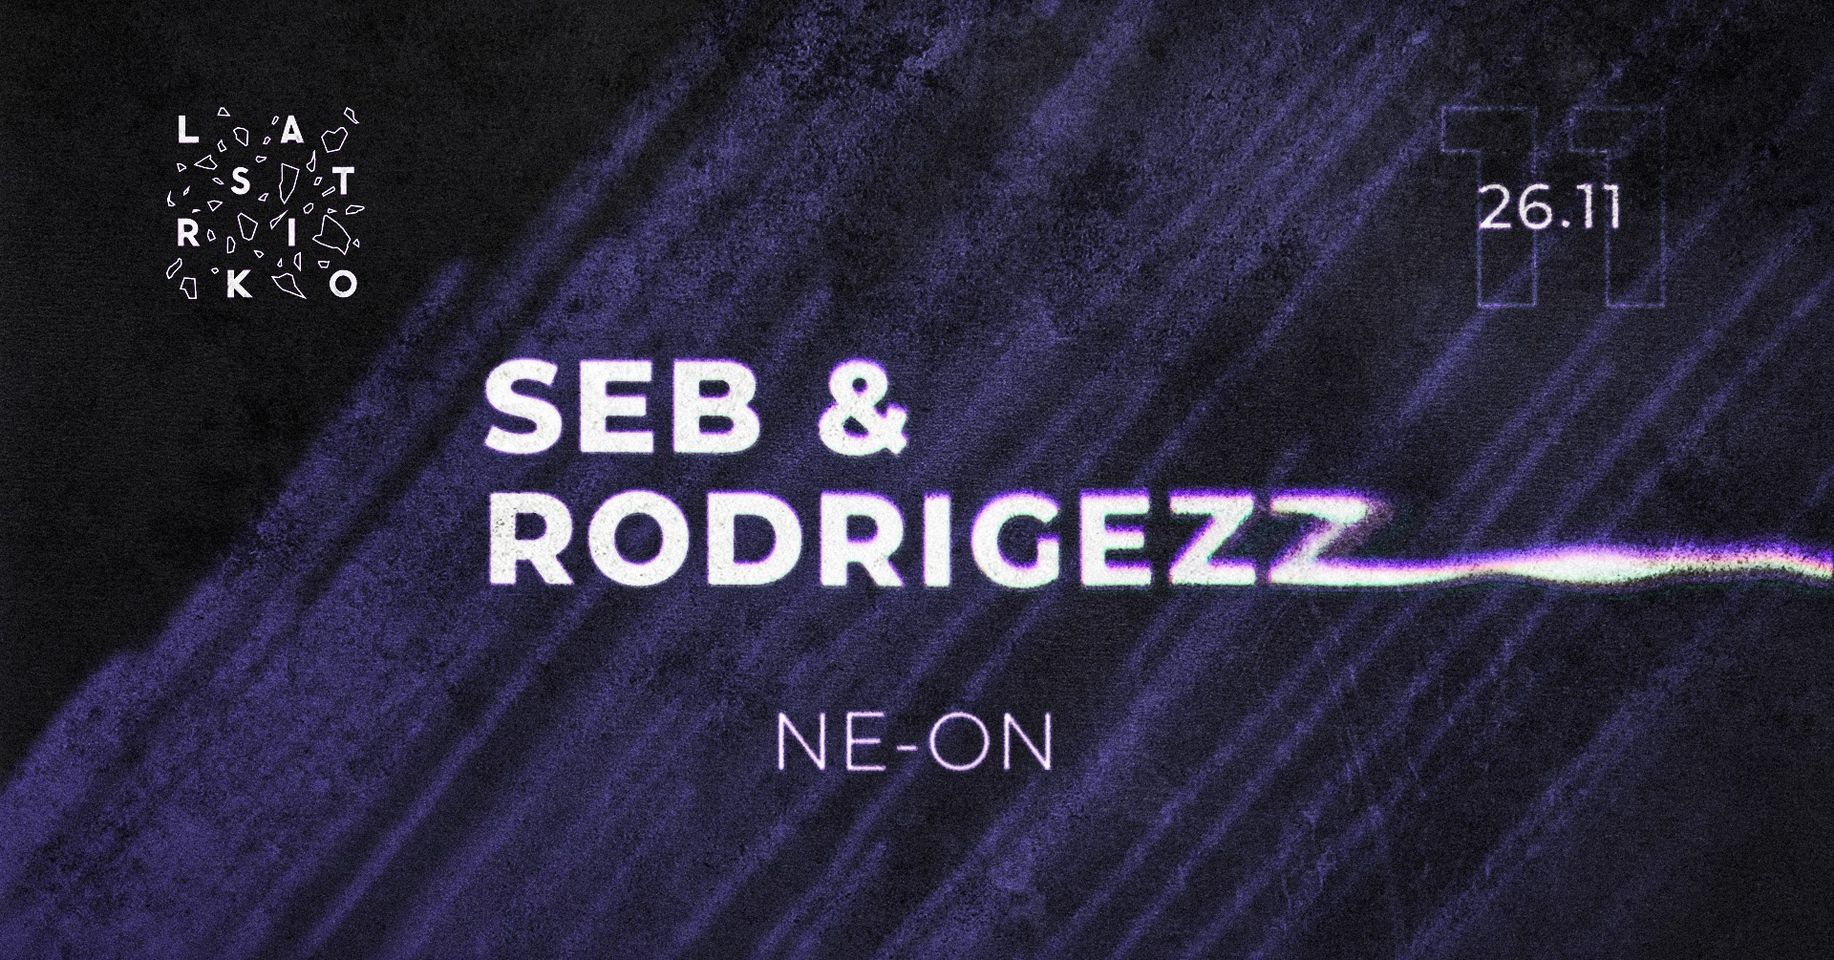 Seb & Rodrugezz // NE-ON